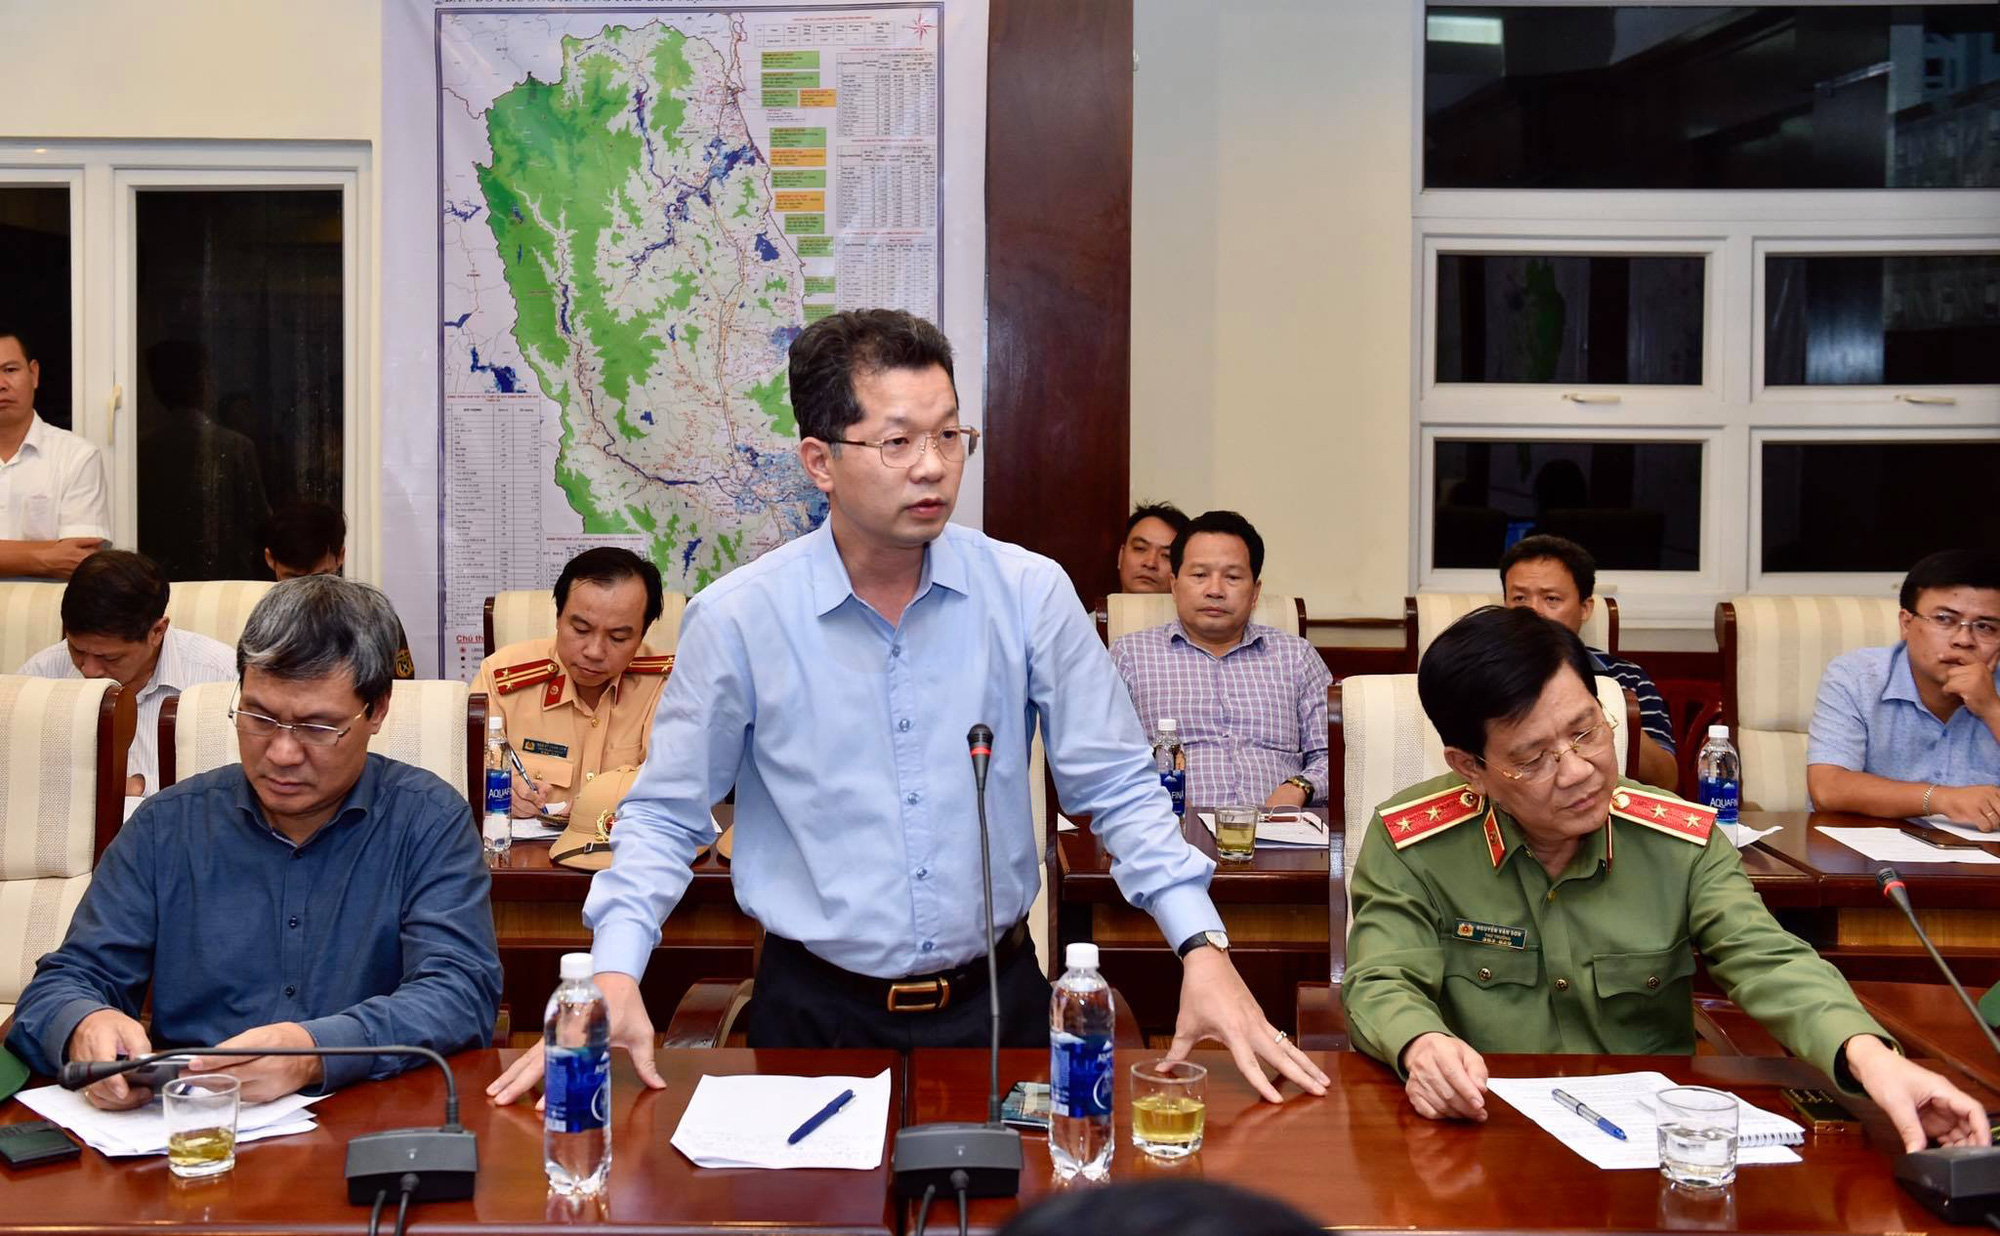 Clip: Thủ tướng Chính phủ Nguyễn Xuân Phúc giữa đêm gọi điện cho Phó thủ tướng Trịnh Đình Dũng chỉ để hỏi 1 câu - Ảnh 4.